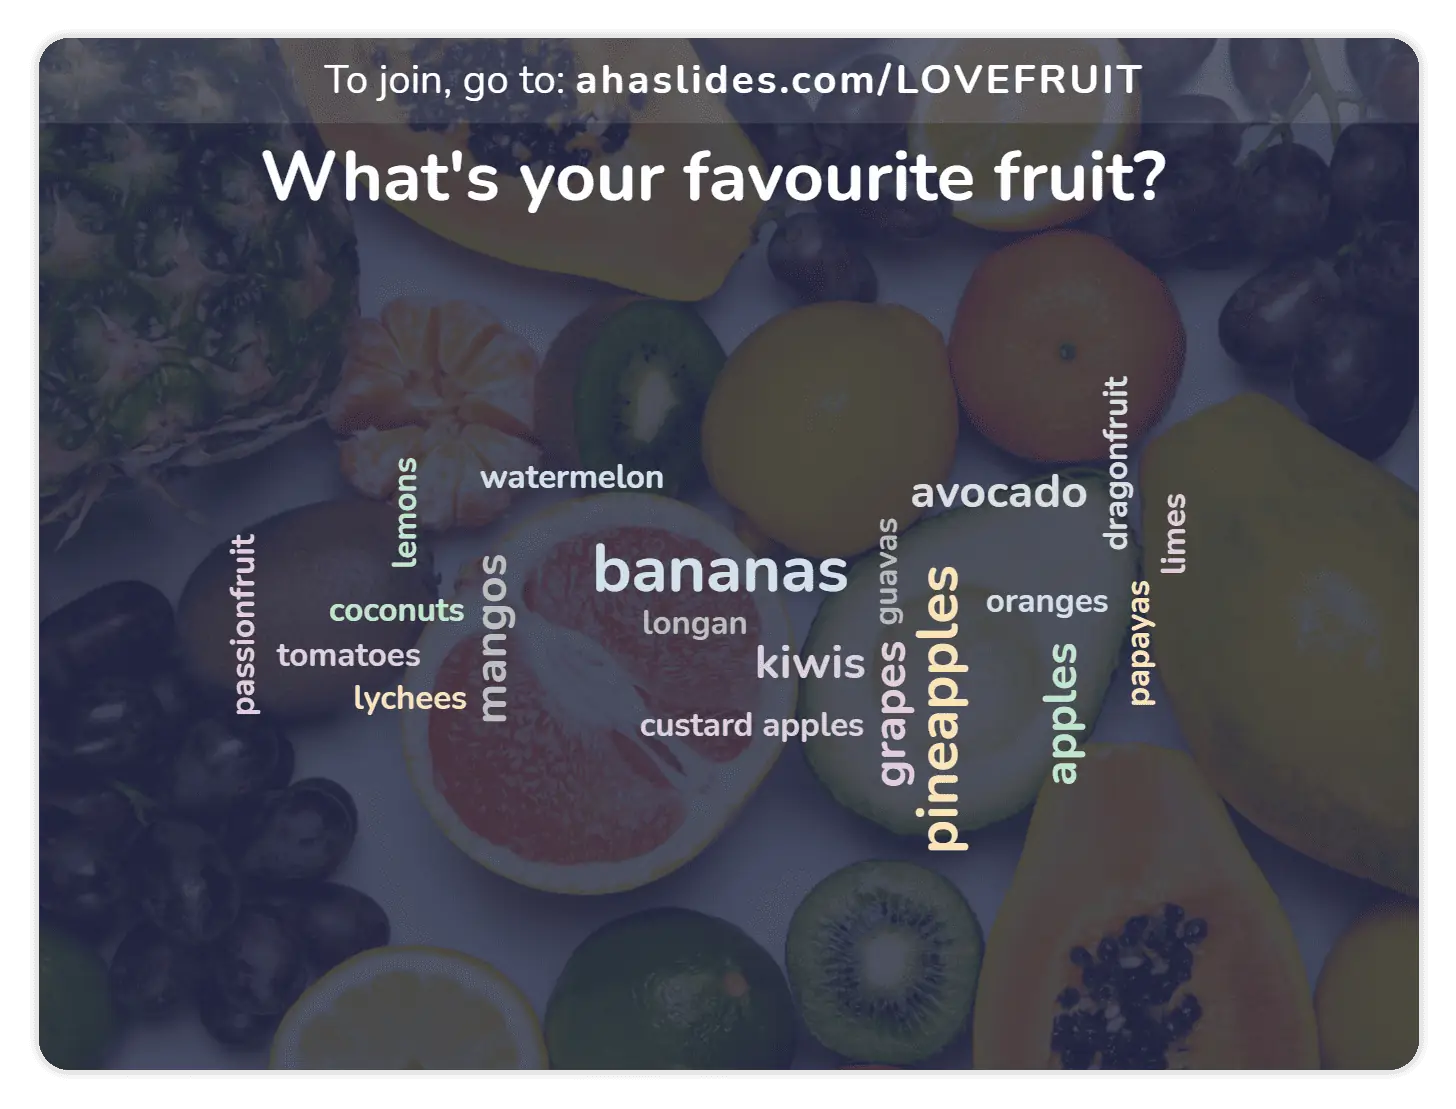 żywa chmura słów z pytaniem „jaki jest twój ulubiony owoc” wraz z odpowiedziami